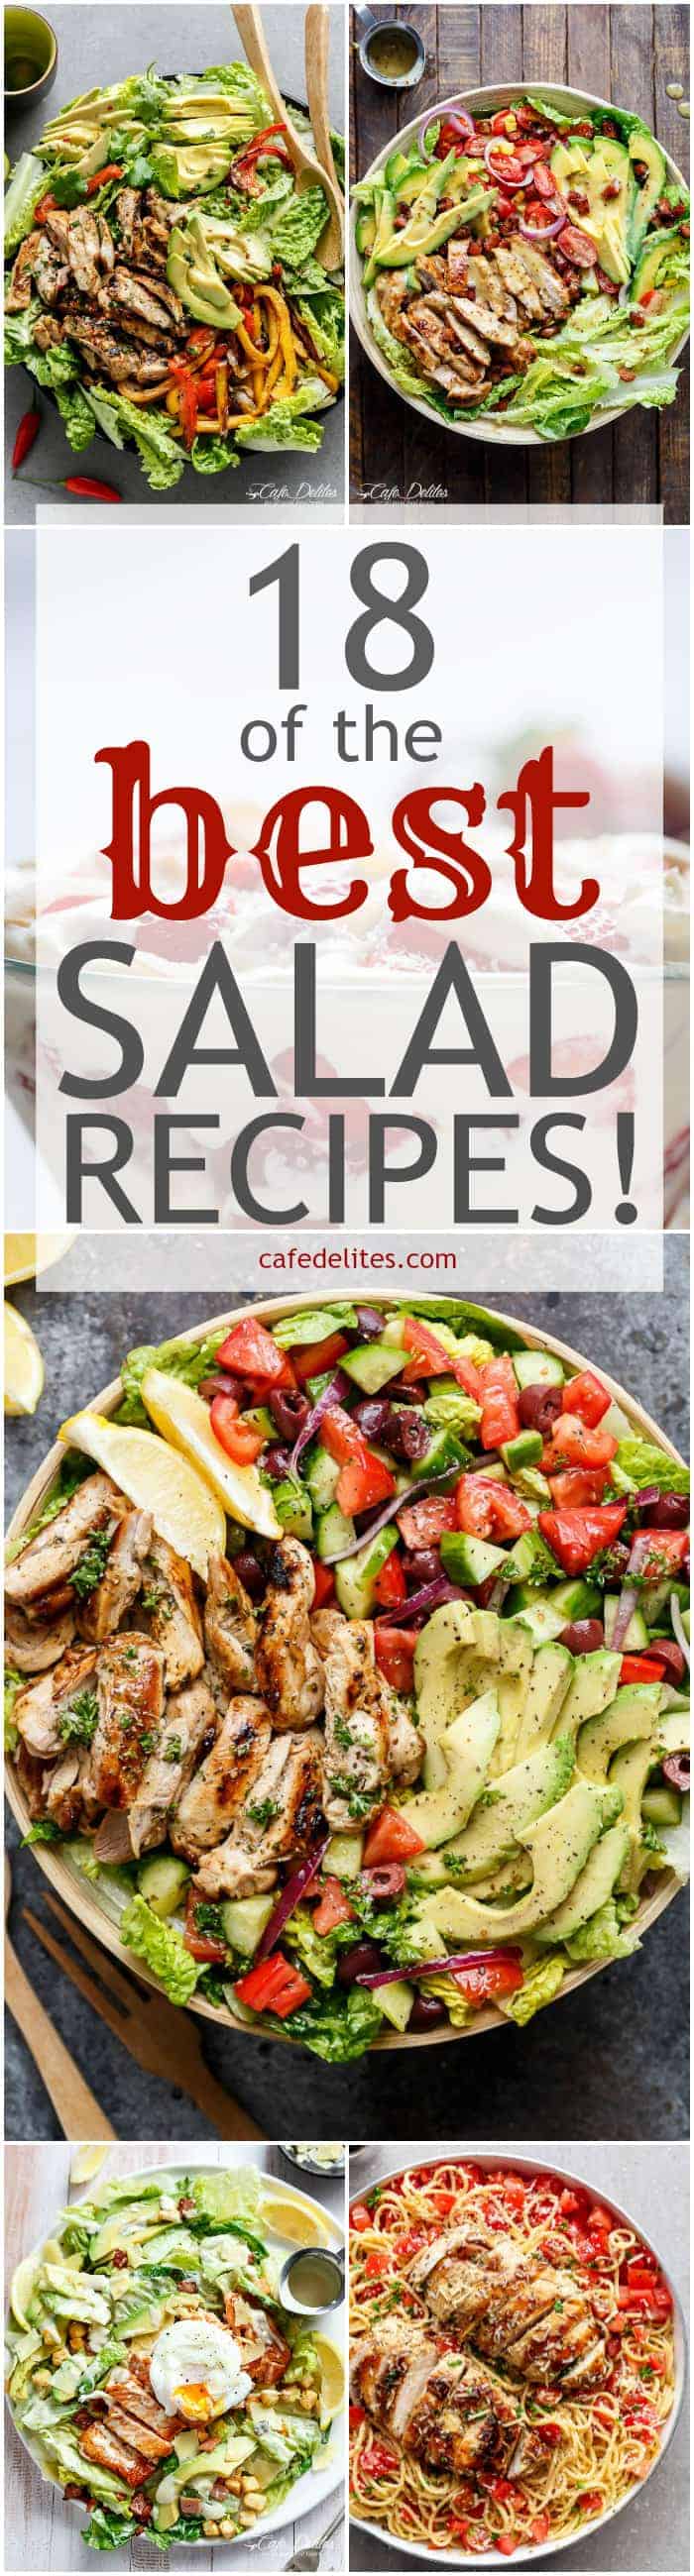 18 Best Salad Recipes | https://cafedelites.com